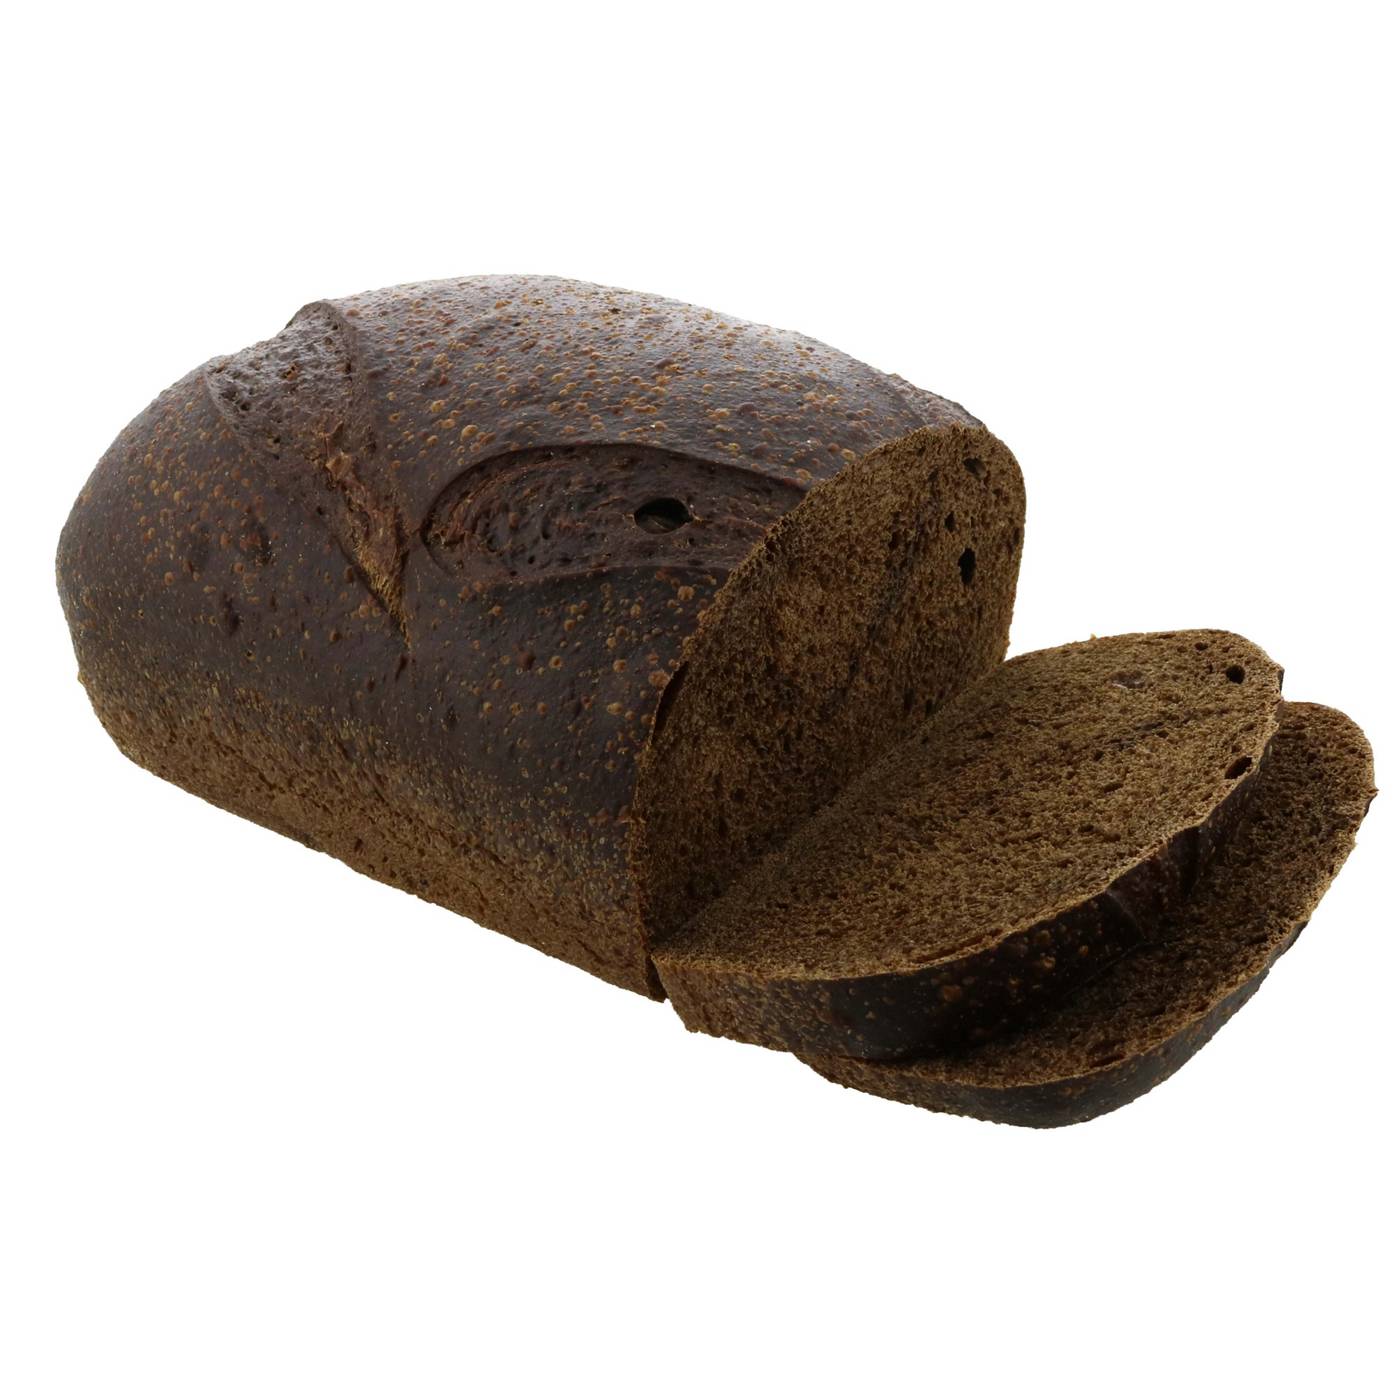 H-E-B Bakery Scratch Pumpernickel Rye Bread; image 1 of 2